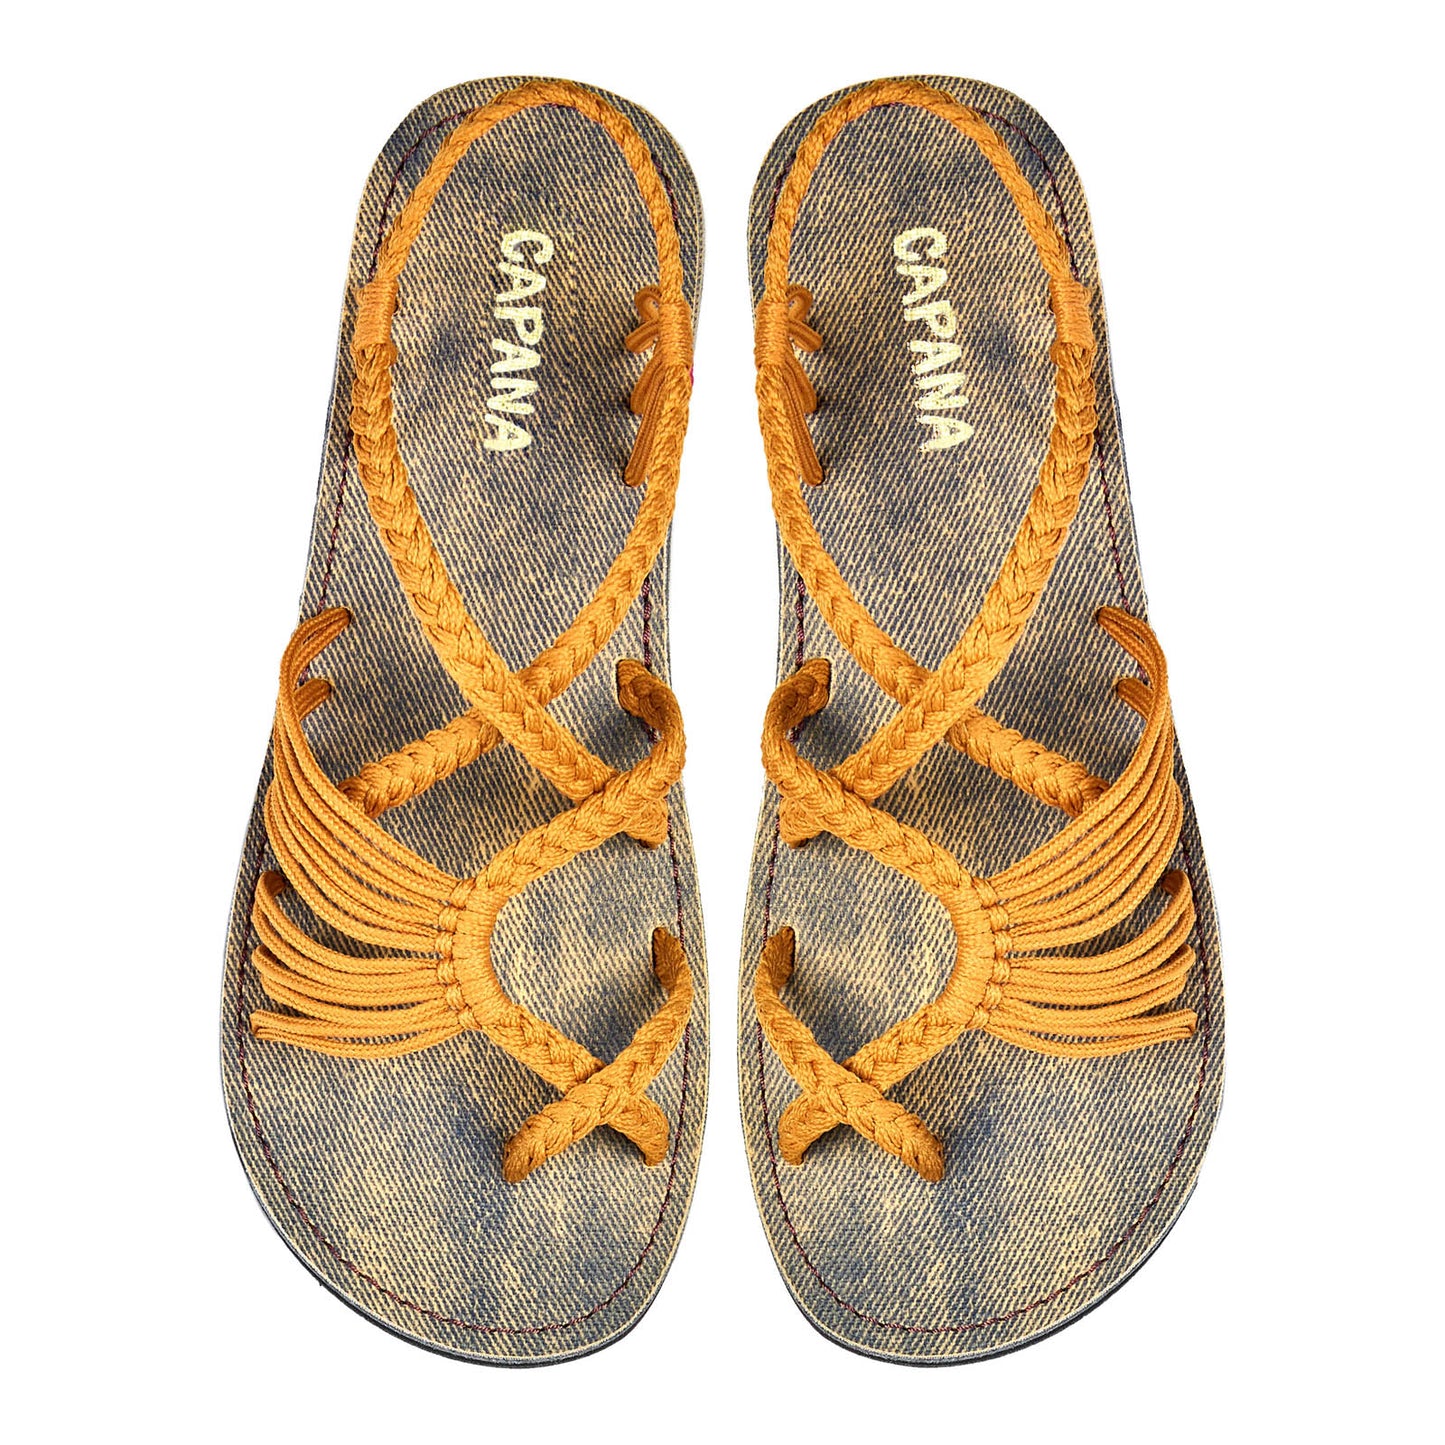 Banyan Sand Jeans Rope Sandals Mustard Crisscross design Flat sandals for women